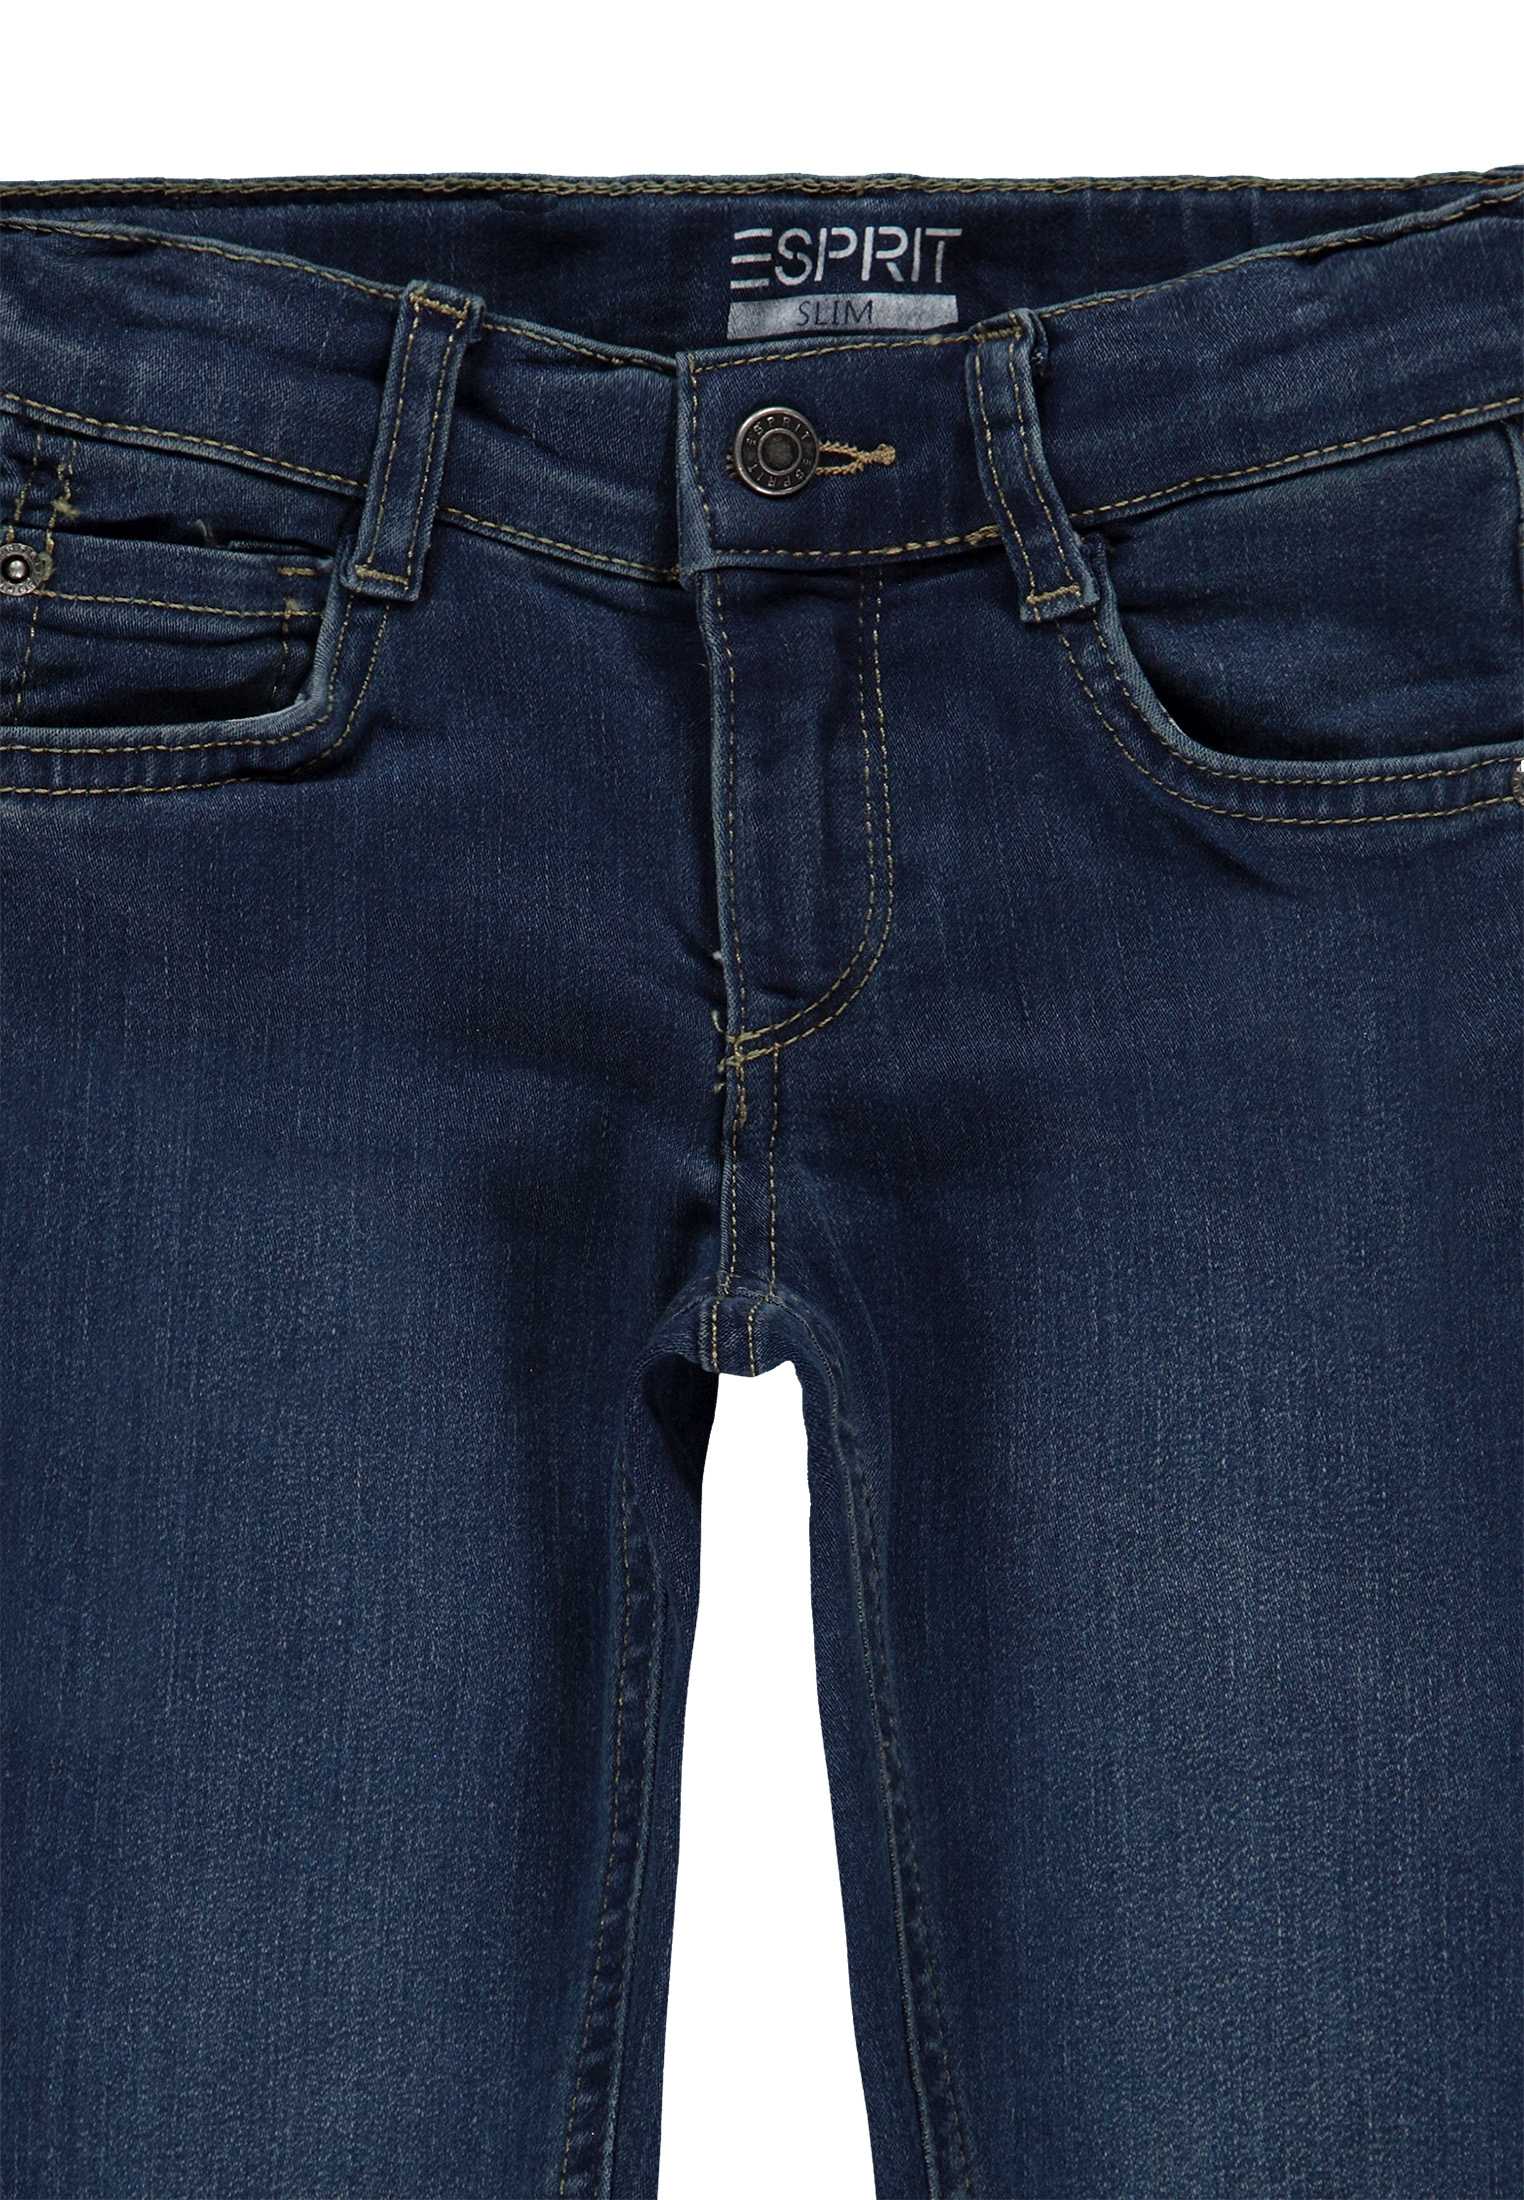 Spodnie jeansowe dla chłopca, Regular Fit, niebieskie, Esprit